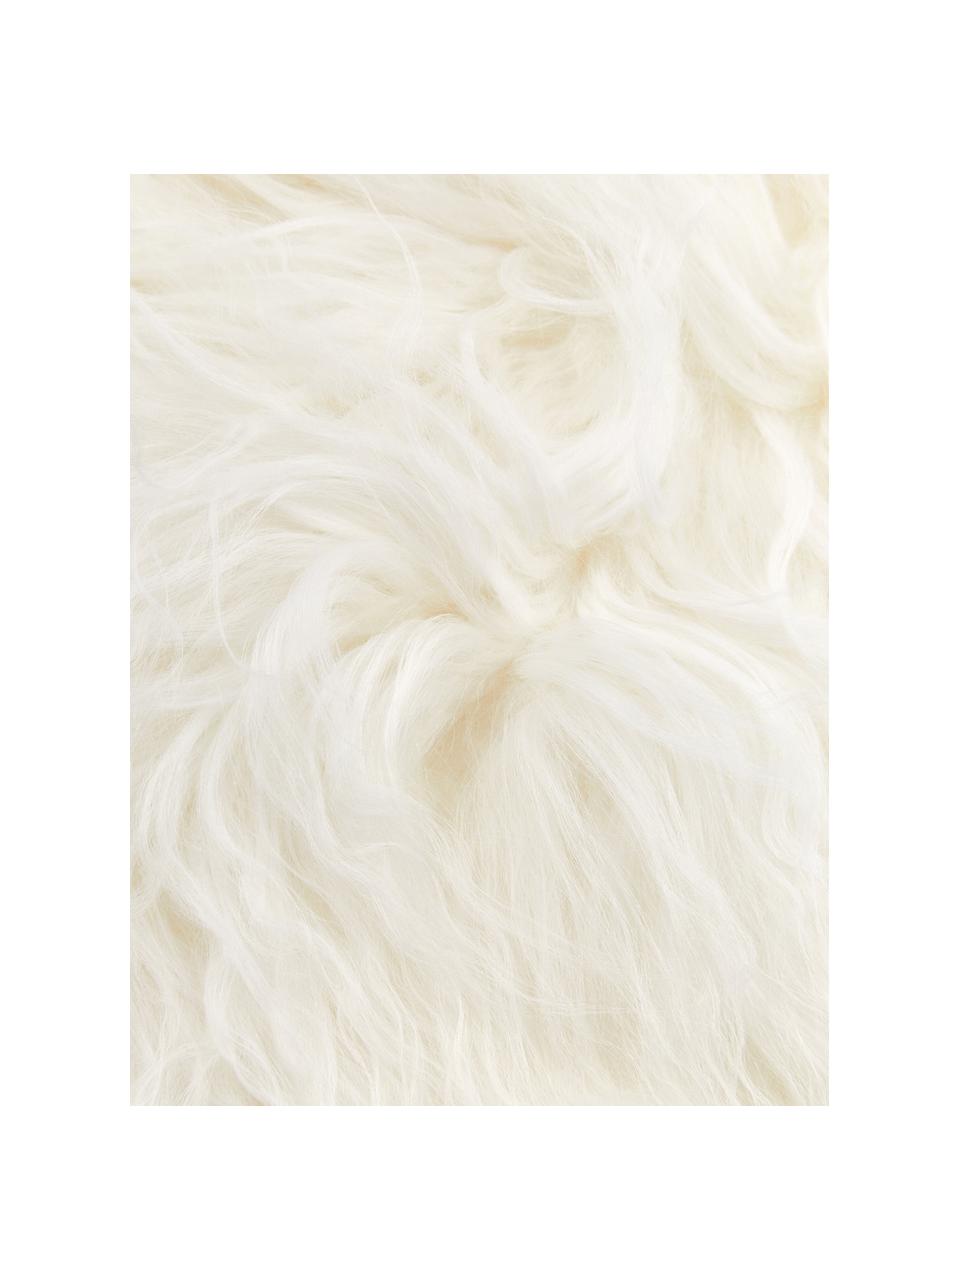 Poszewka na poduszkę ze skóry jagnięcej o długim włosiu Ella, kręsona, Biały, S 40 x D 40 cm